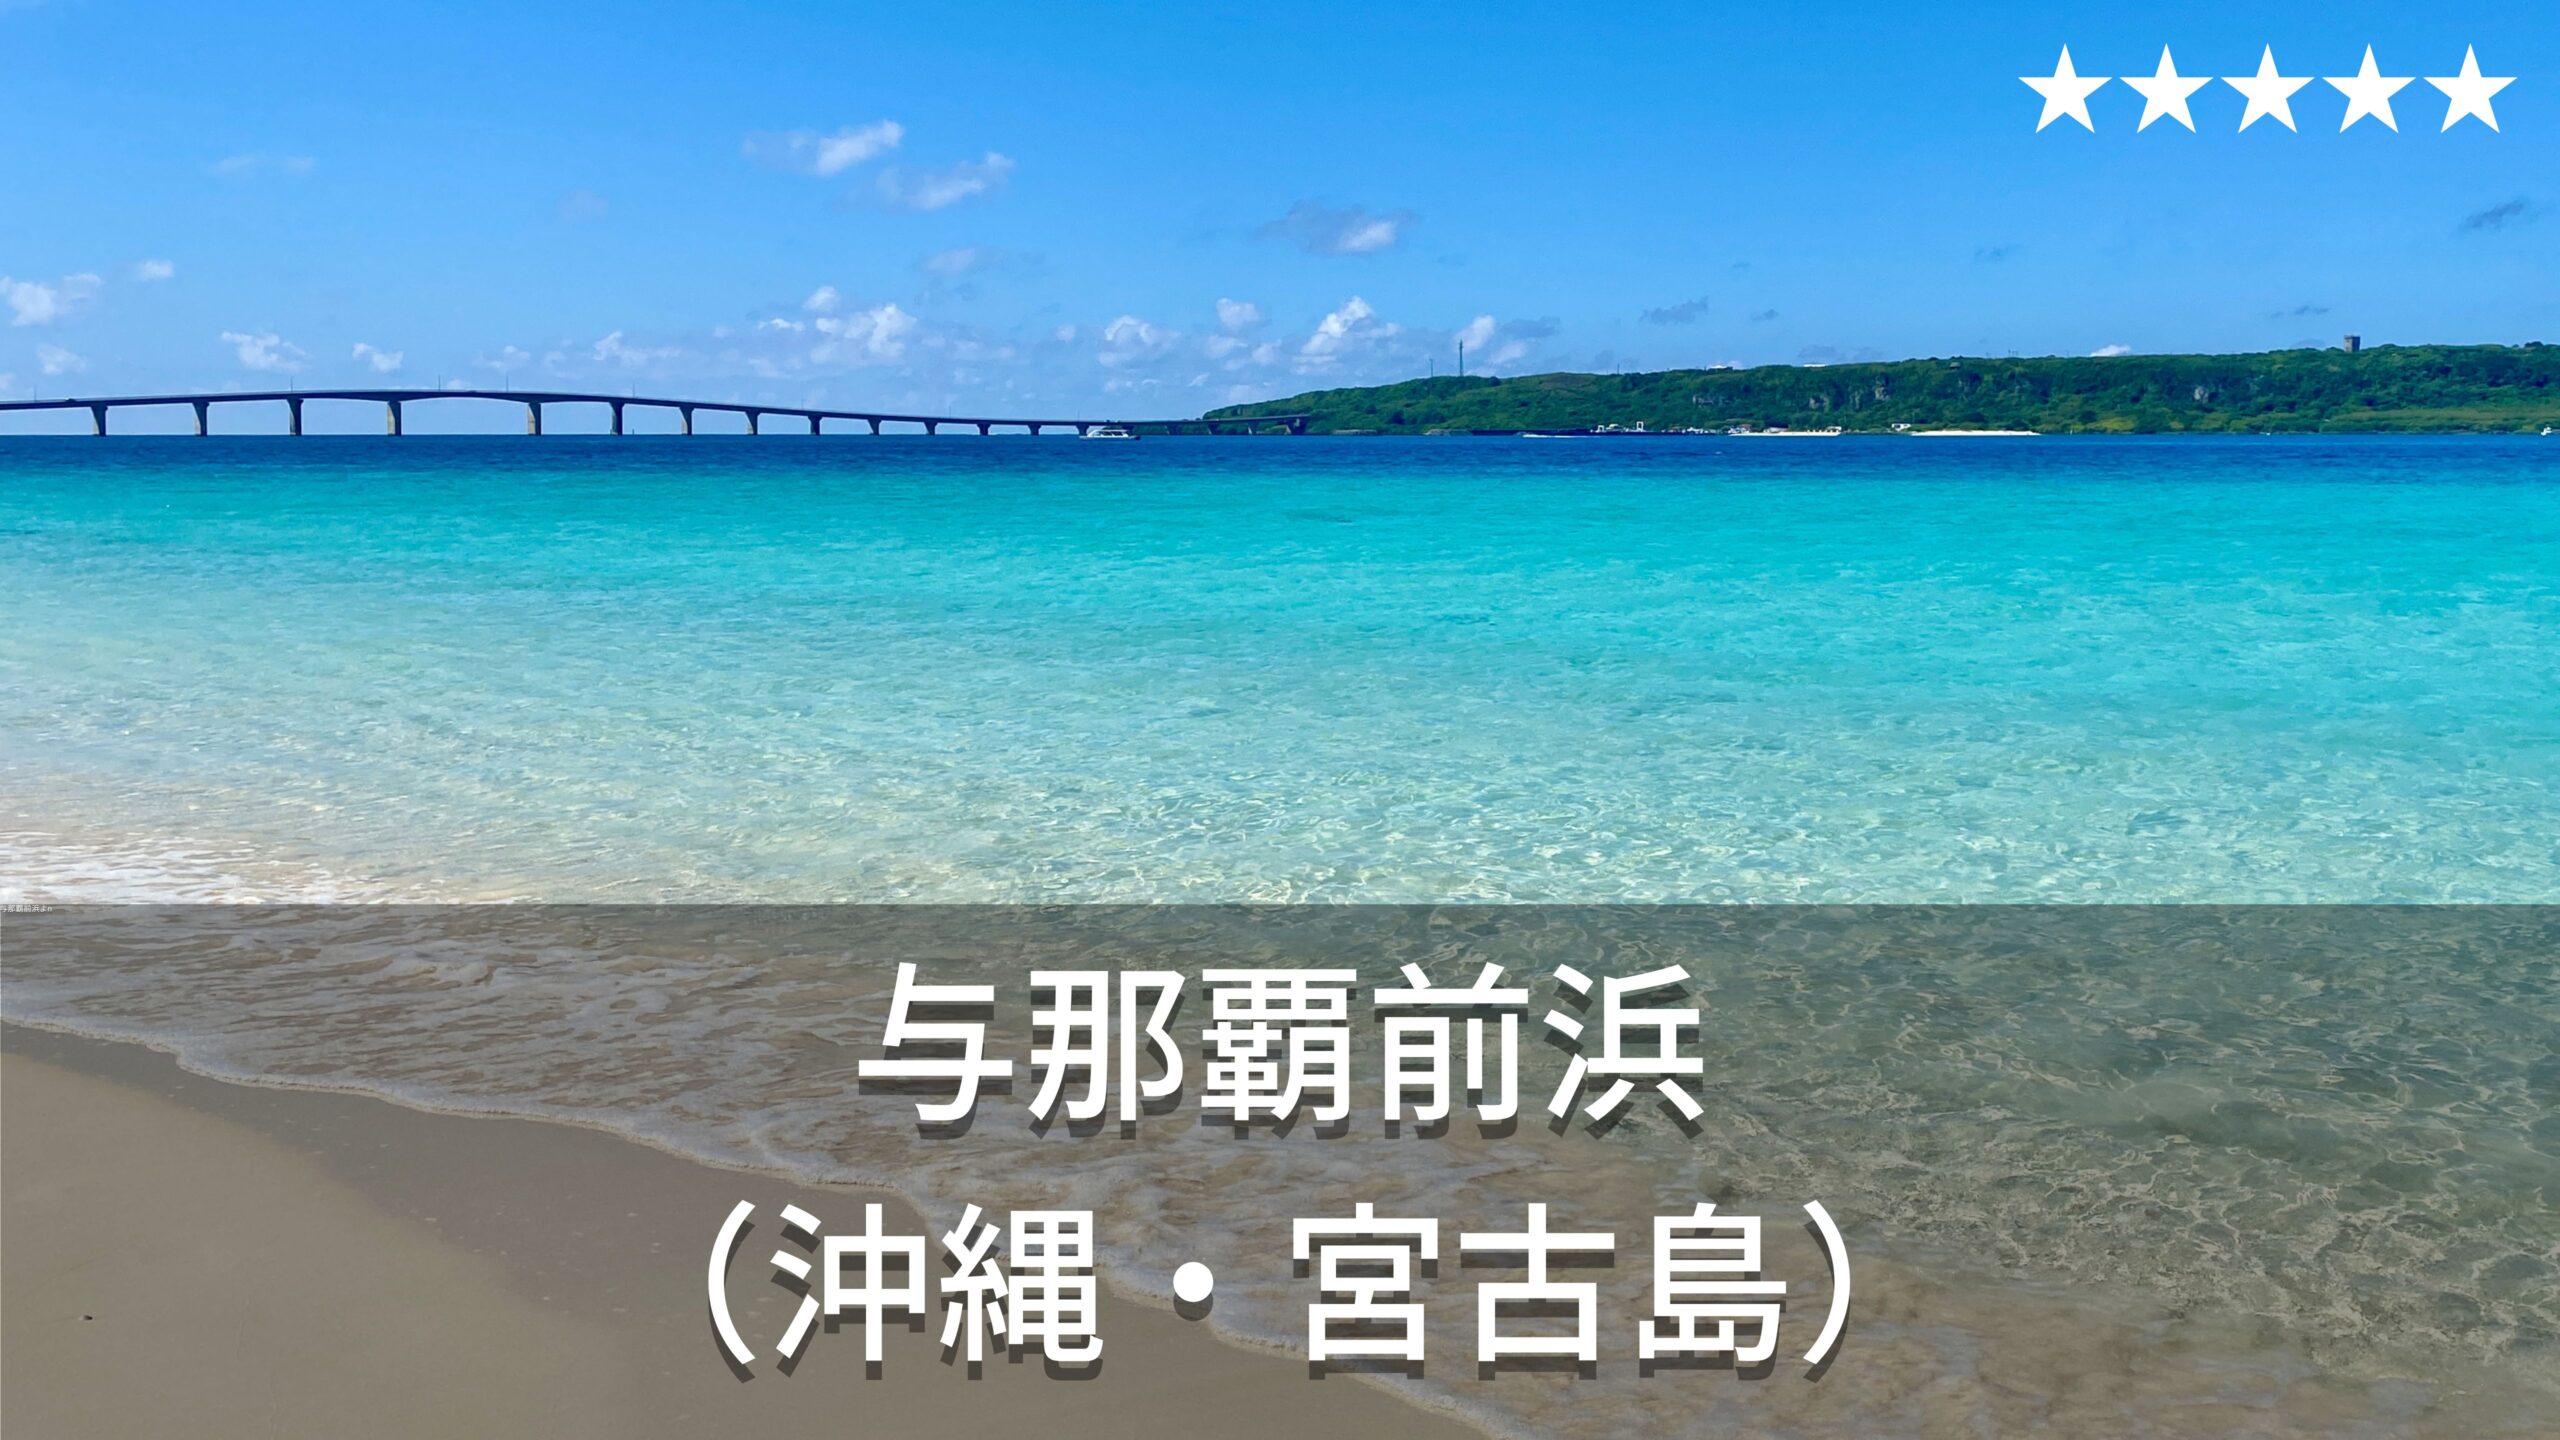 与那覇前浜ビーチ 東洋一の美しさで有名 宮古島旅行で絶対訪れたいマストスポット Hotel Stay Blog